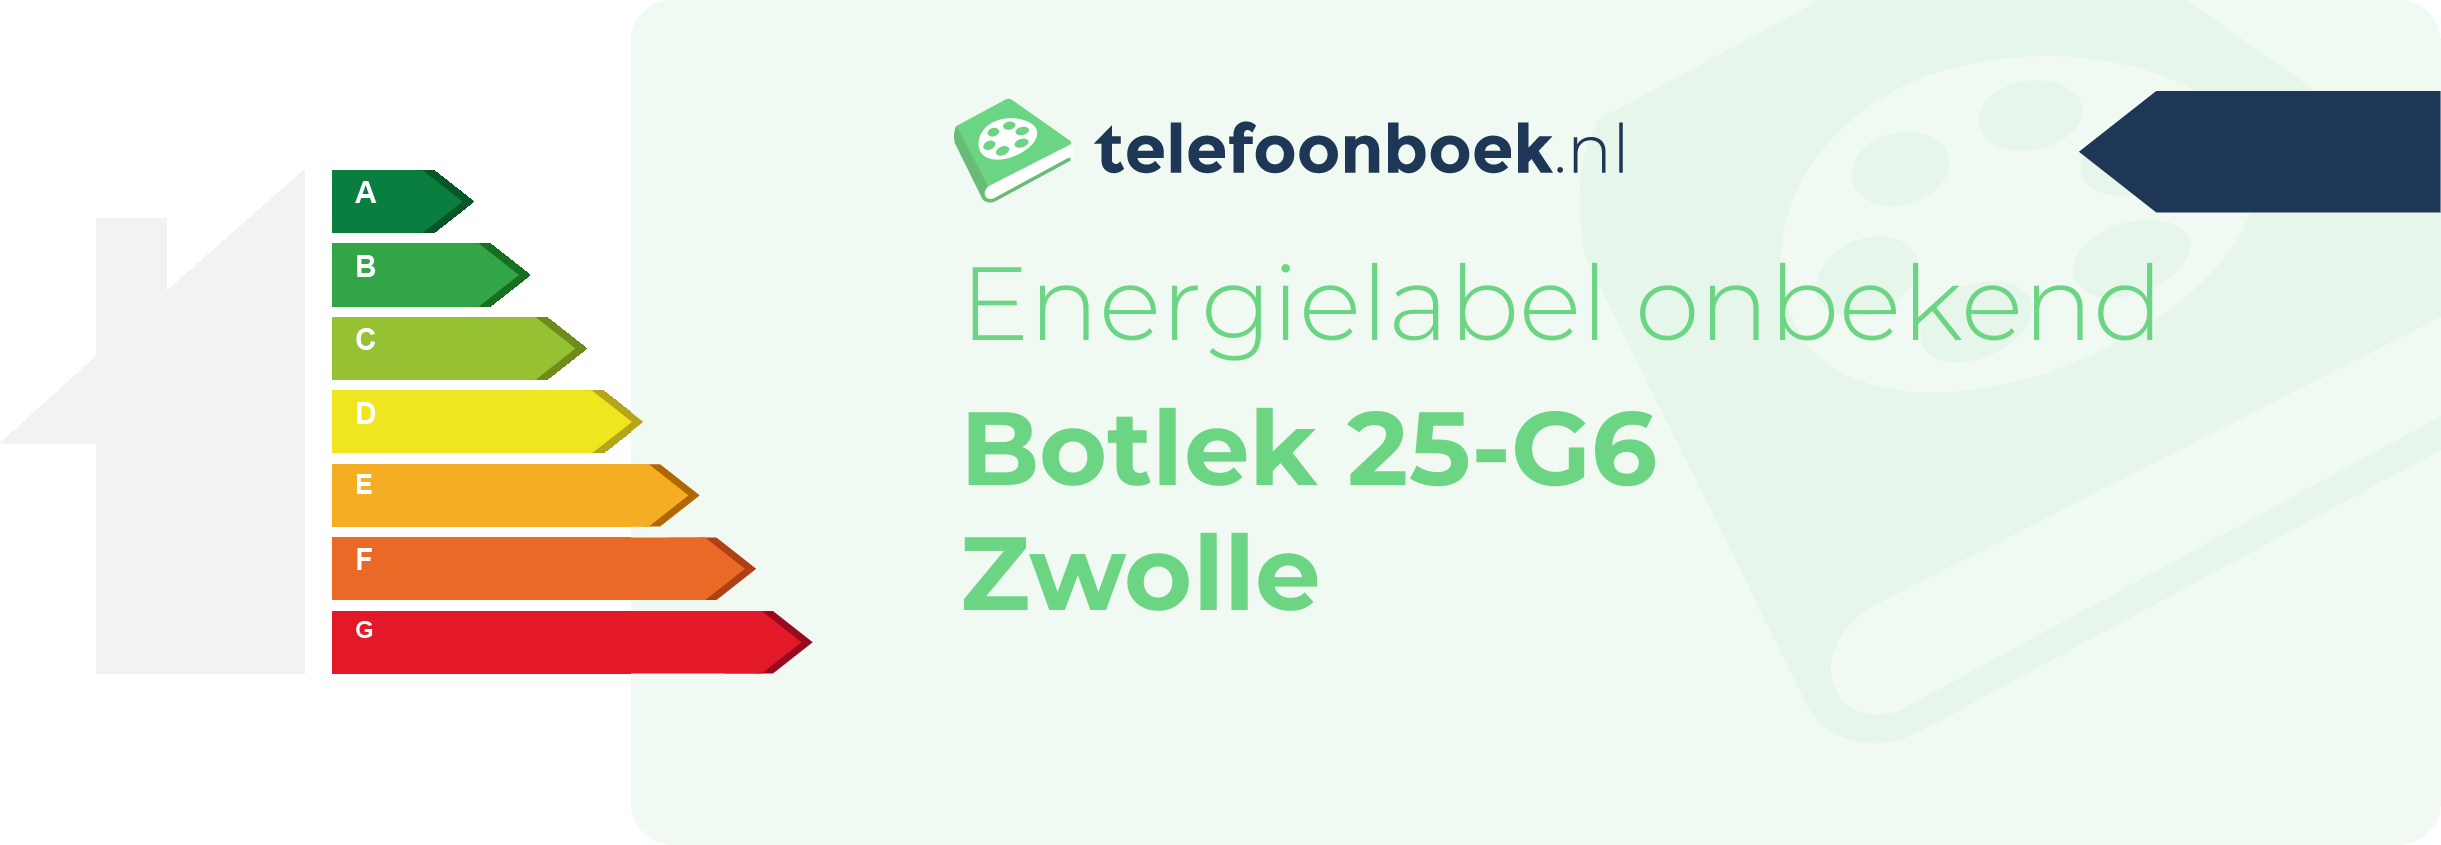 Energielabel Botlek 25-G6 Zwolle